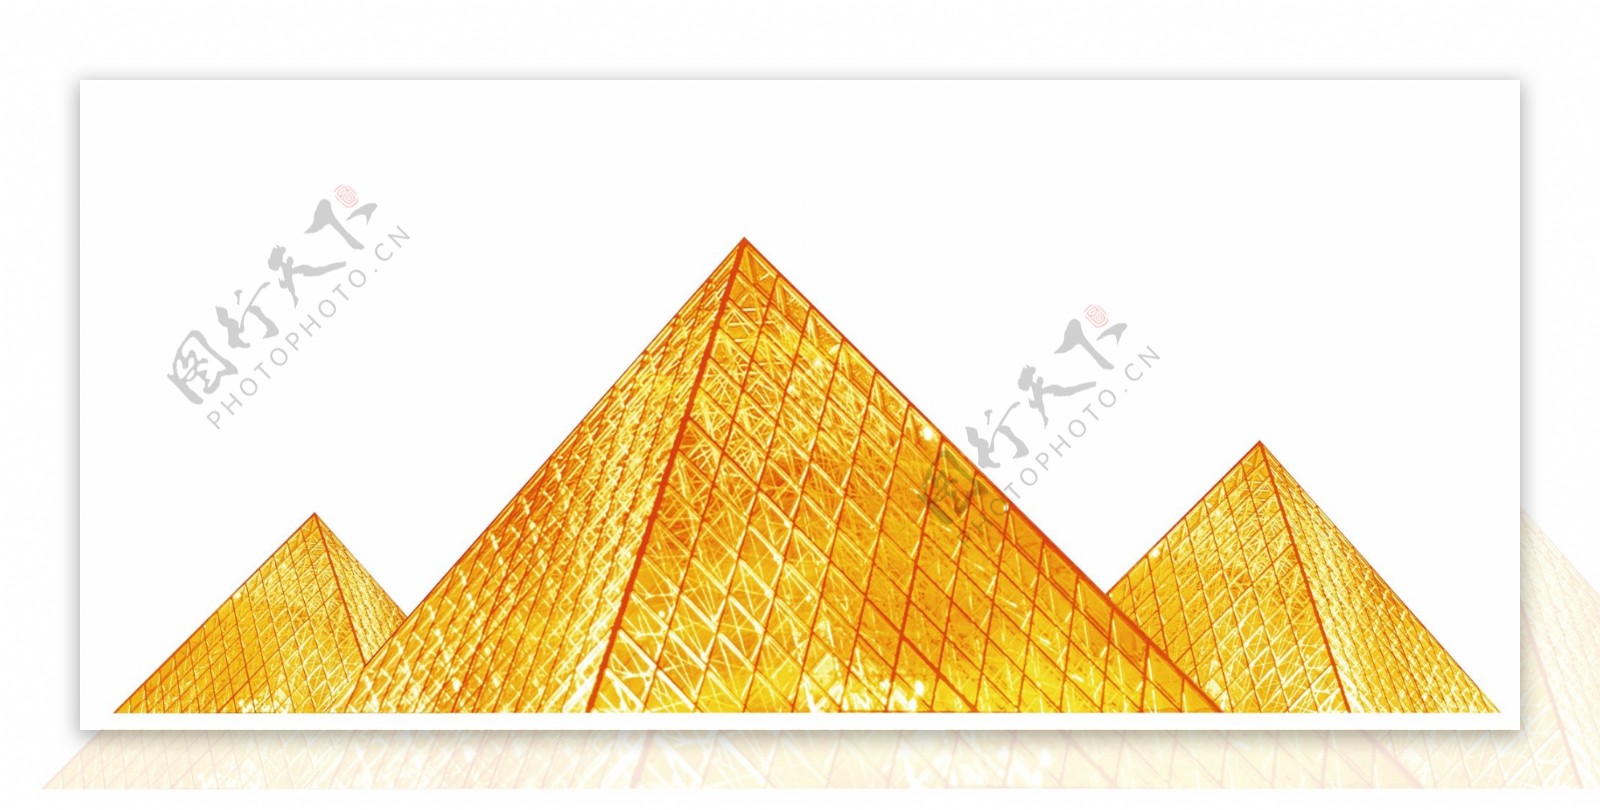 金字塔玻璃房黄金璀璨